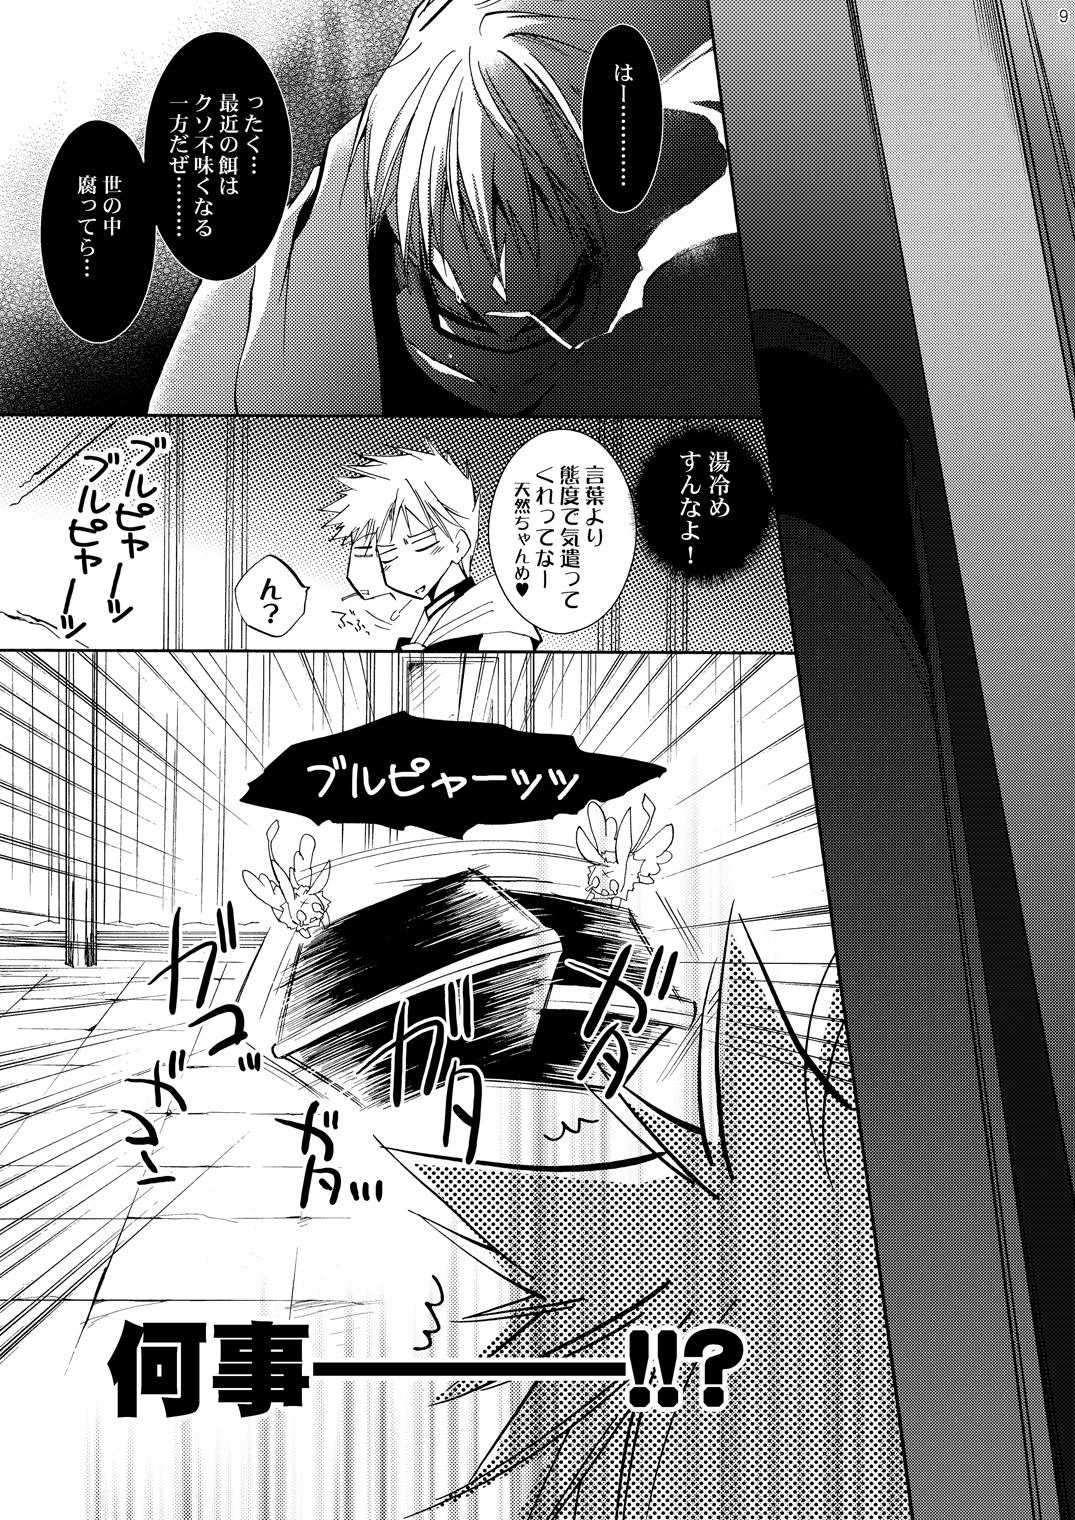 Kink Hananemu no itsu waga mune ni kimi nemuru - 07-ghost Follada - Page 8